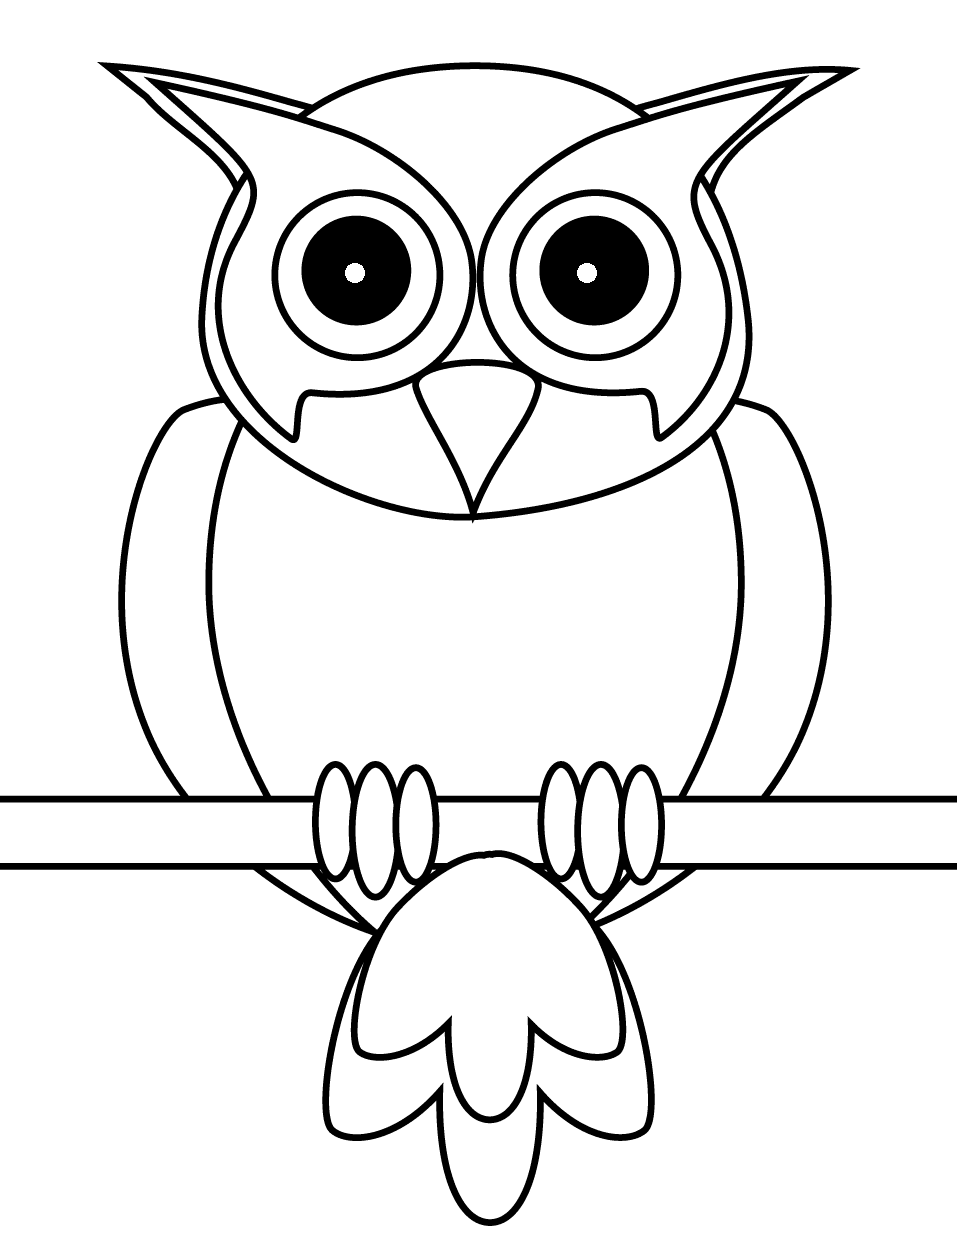 猫头鹰可免费打印 Owl